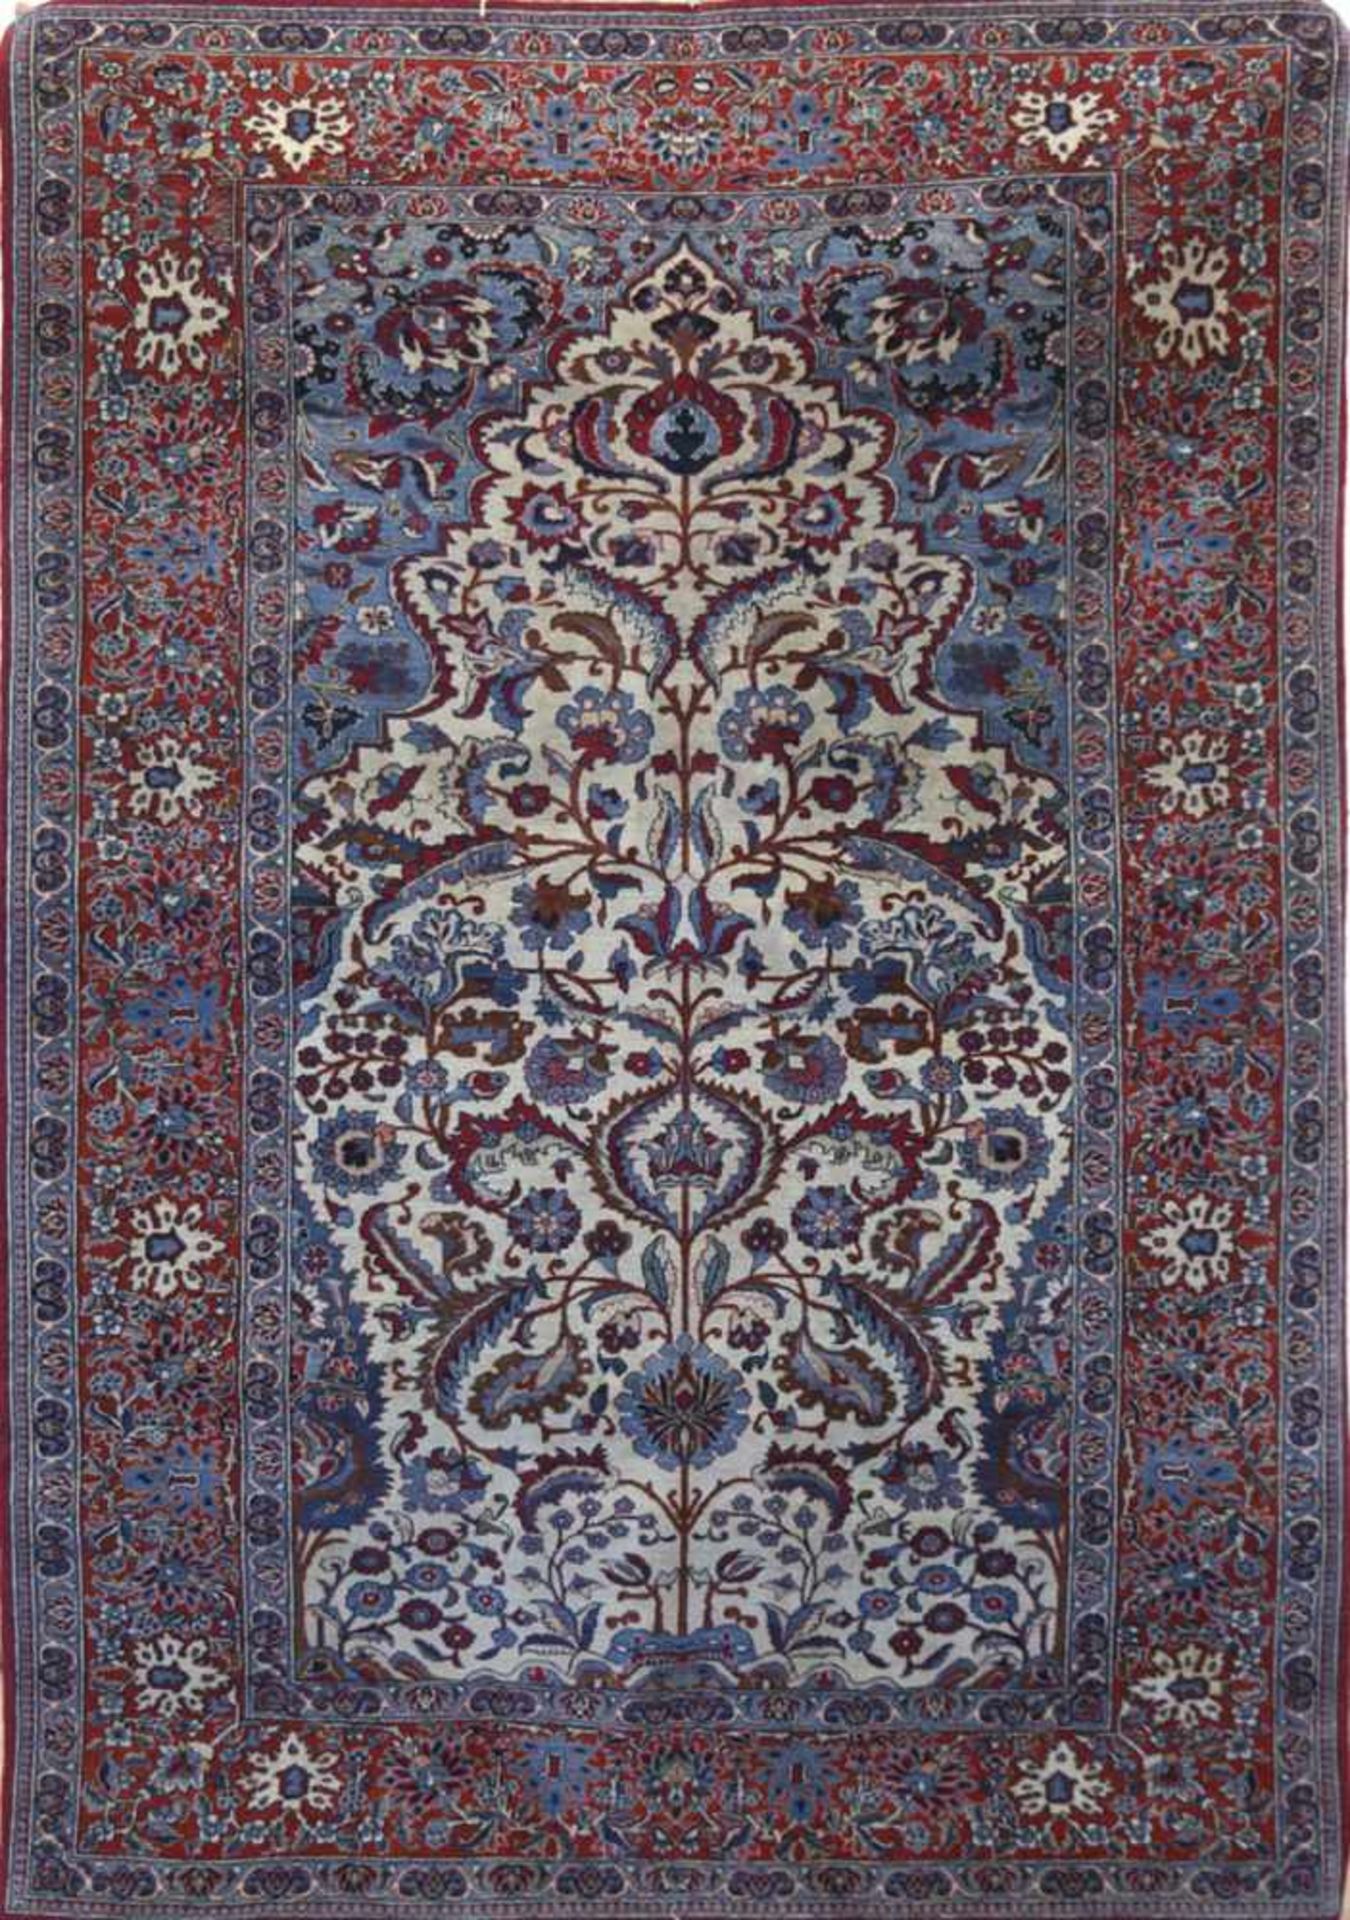 Teppich, rot- /blaugrundig, mit zentralem Floralmotiv, Kanten sowie mittig stellenweise